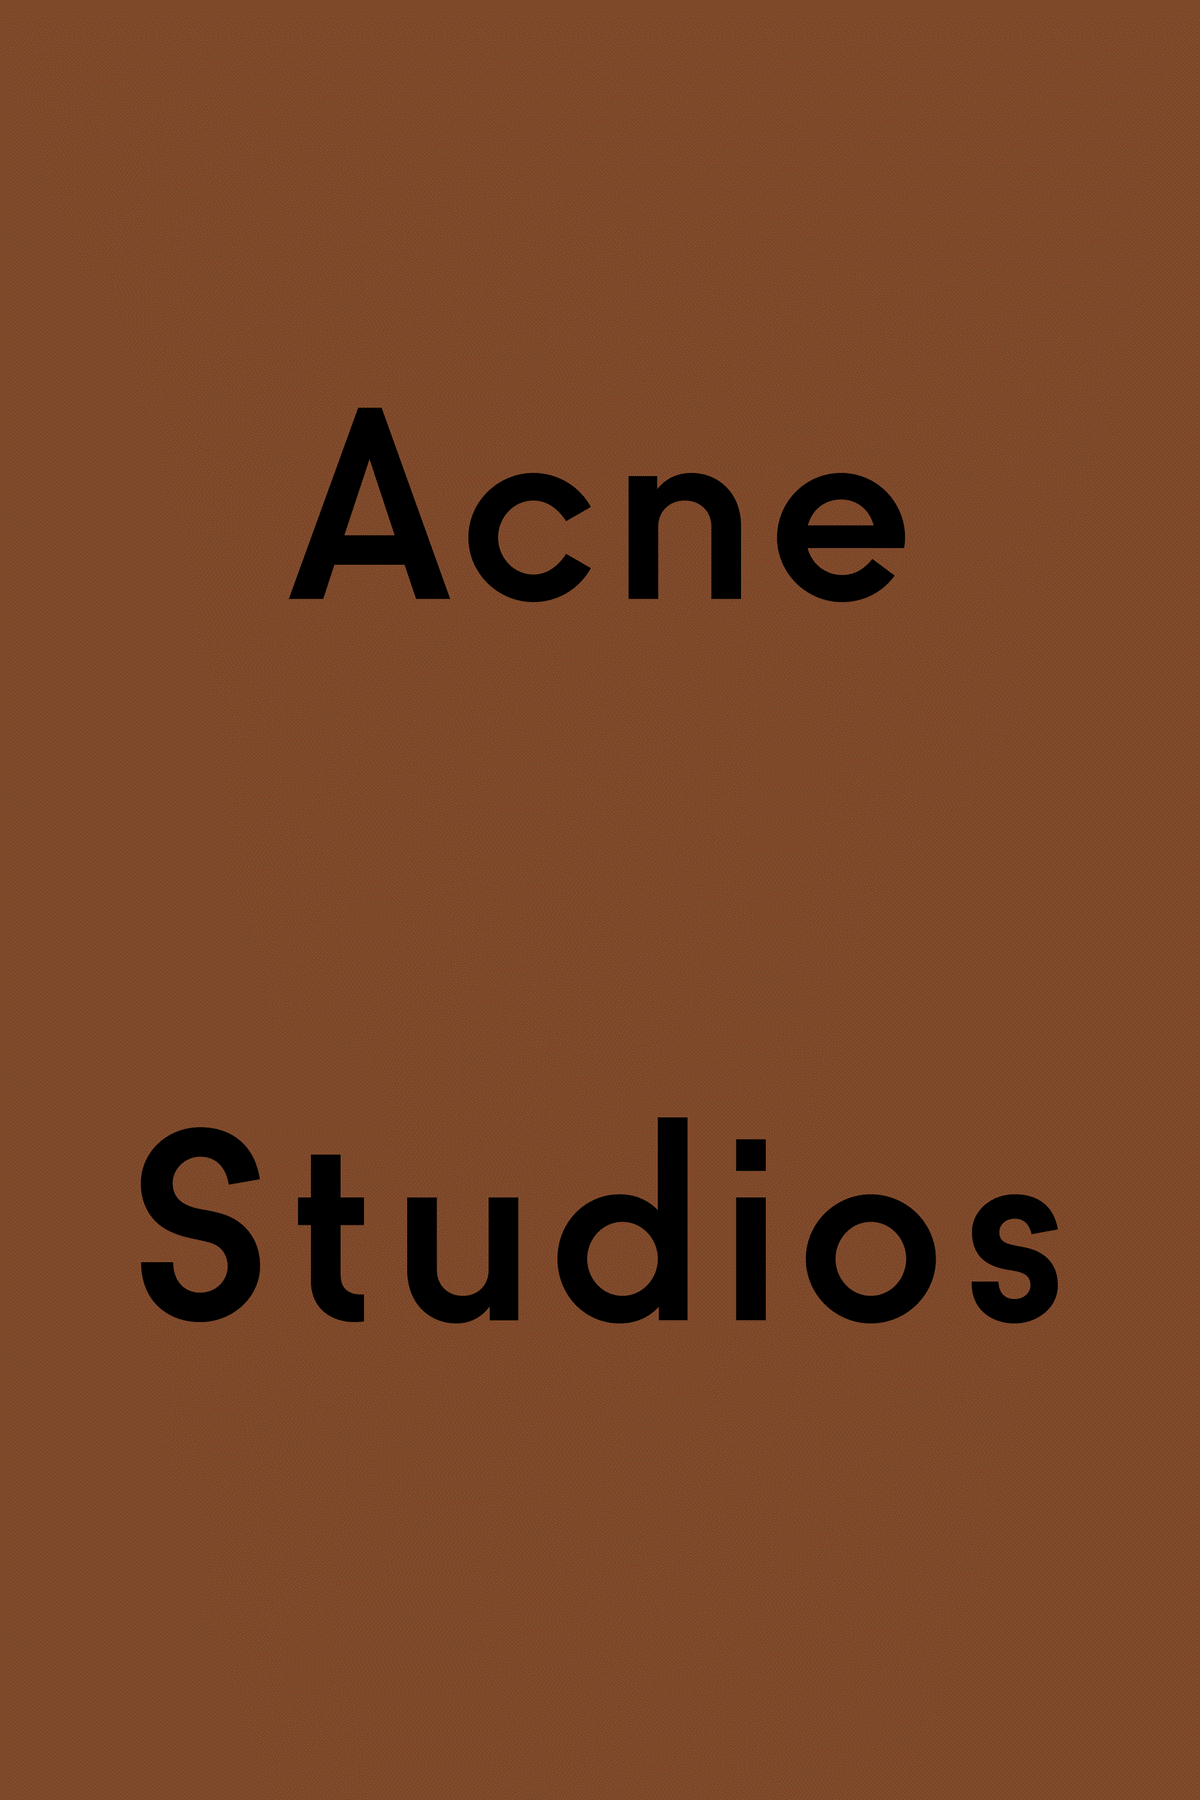 Acne Studios Gif